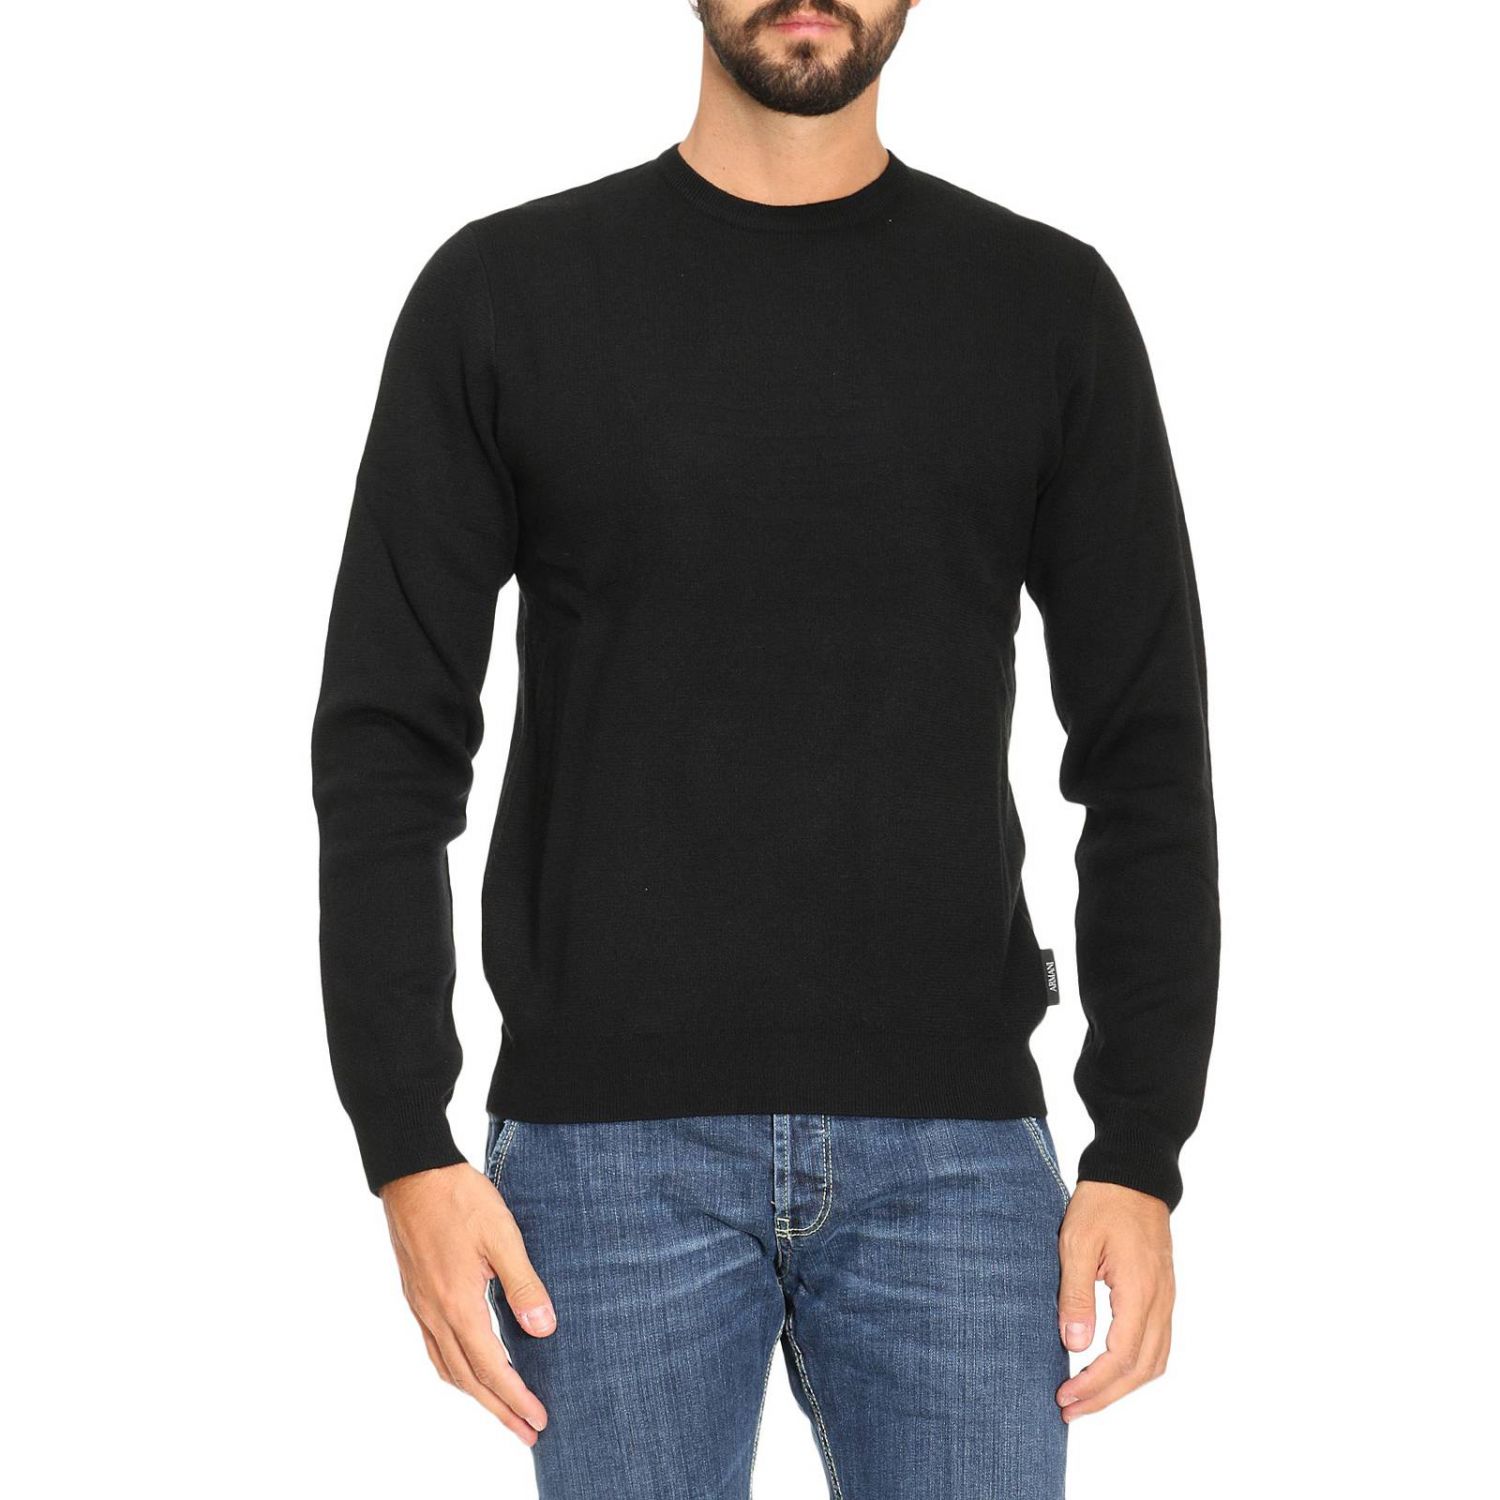 Sweater Armani Jeans Men | Sweater Men Armani Jeans 6Y6MD3 6MFJZ Giglio EN